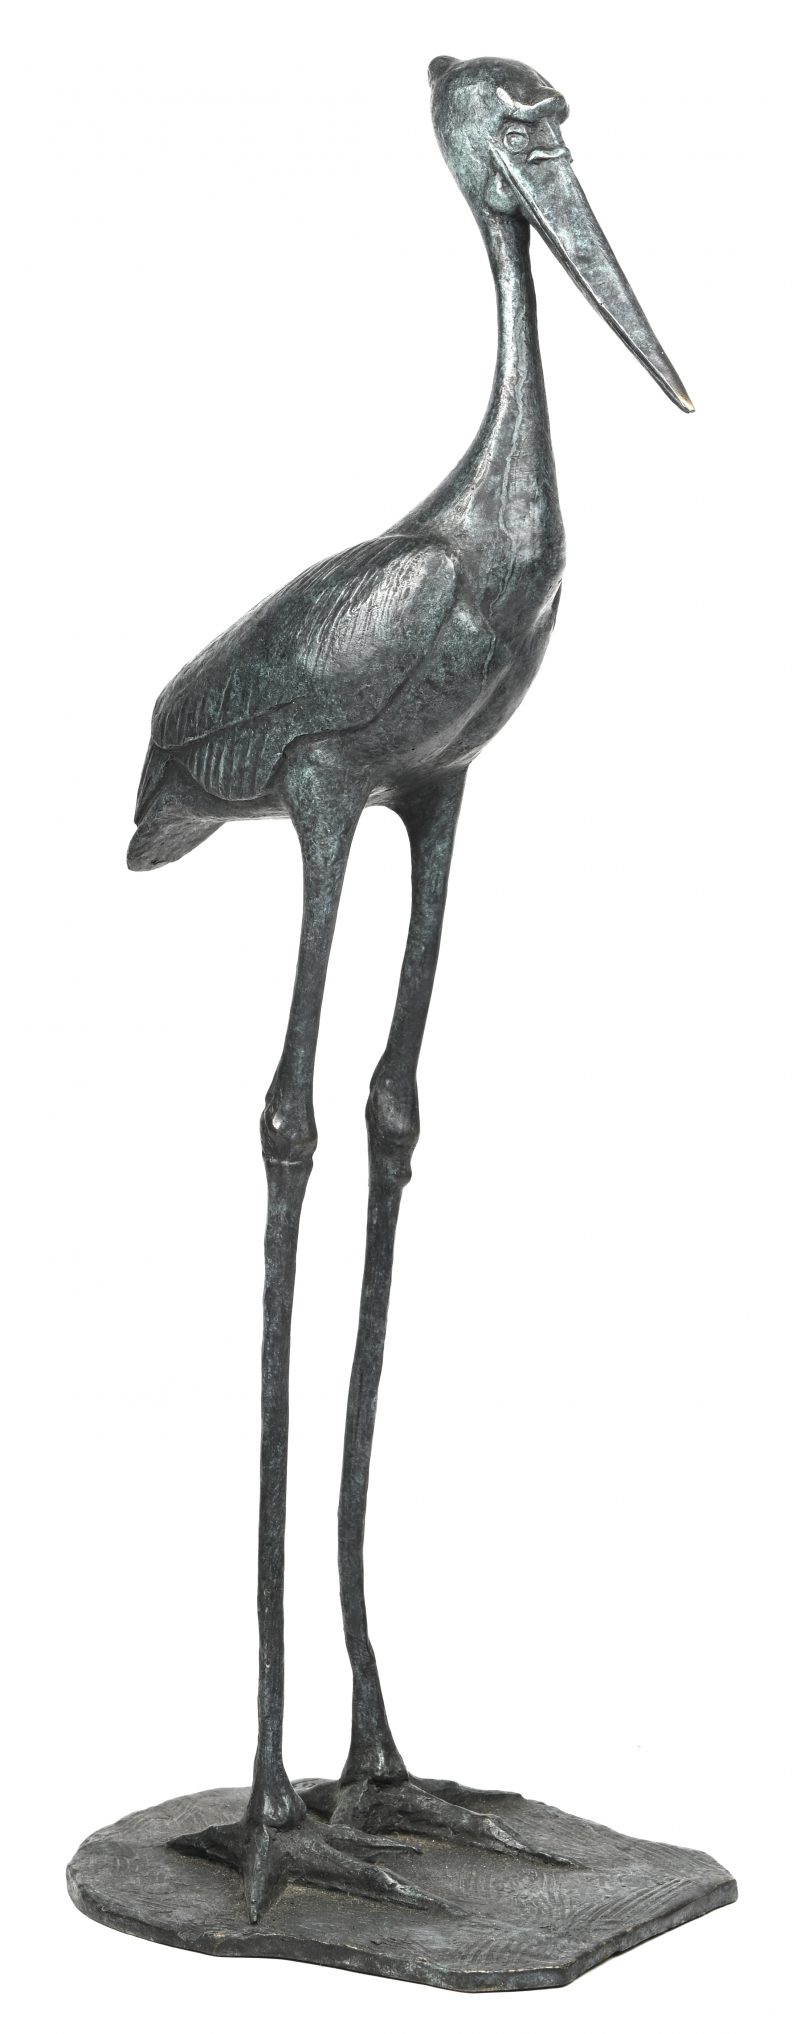 Bronzen beeld van een maraboe.